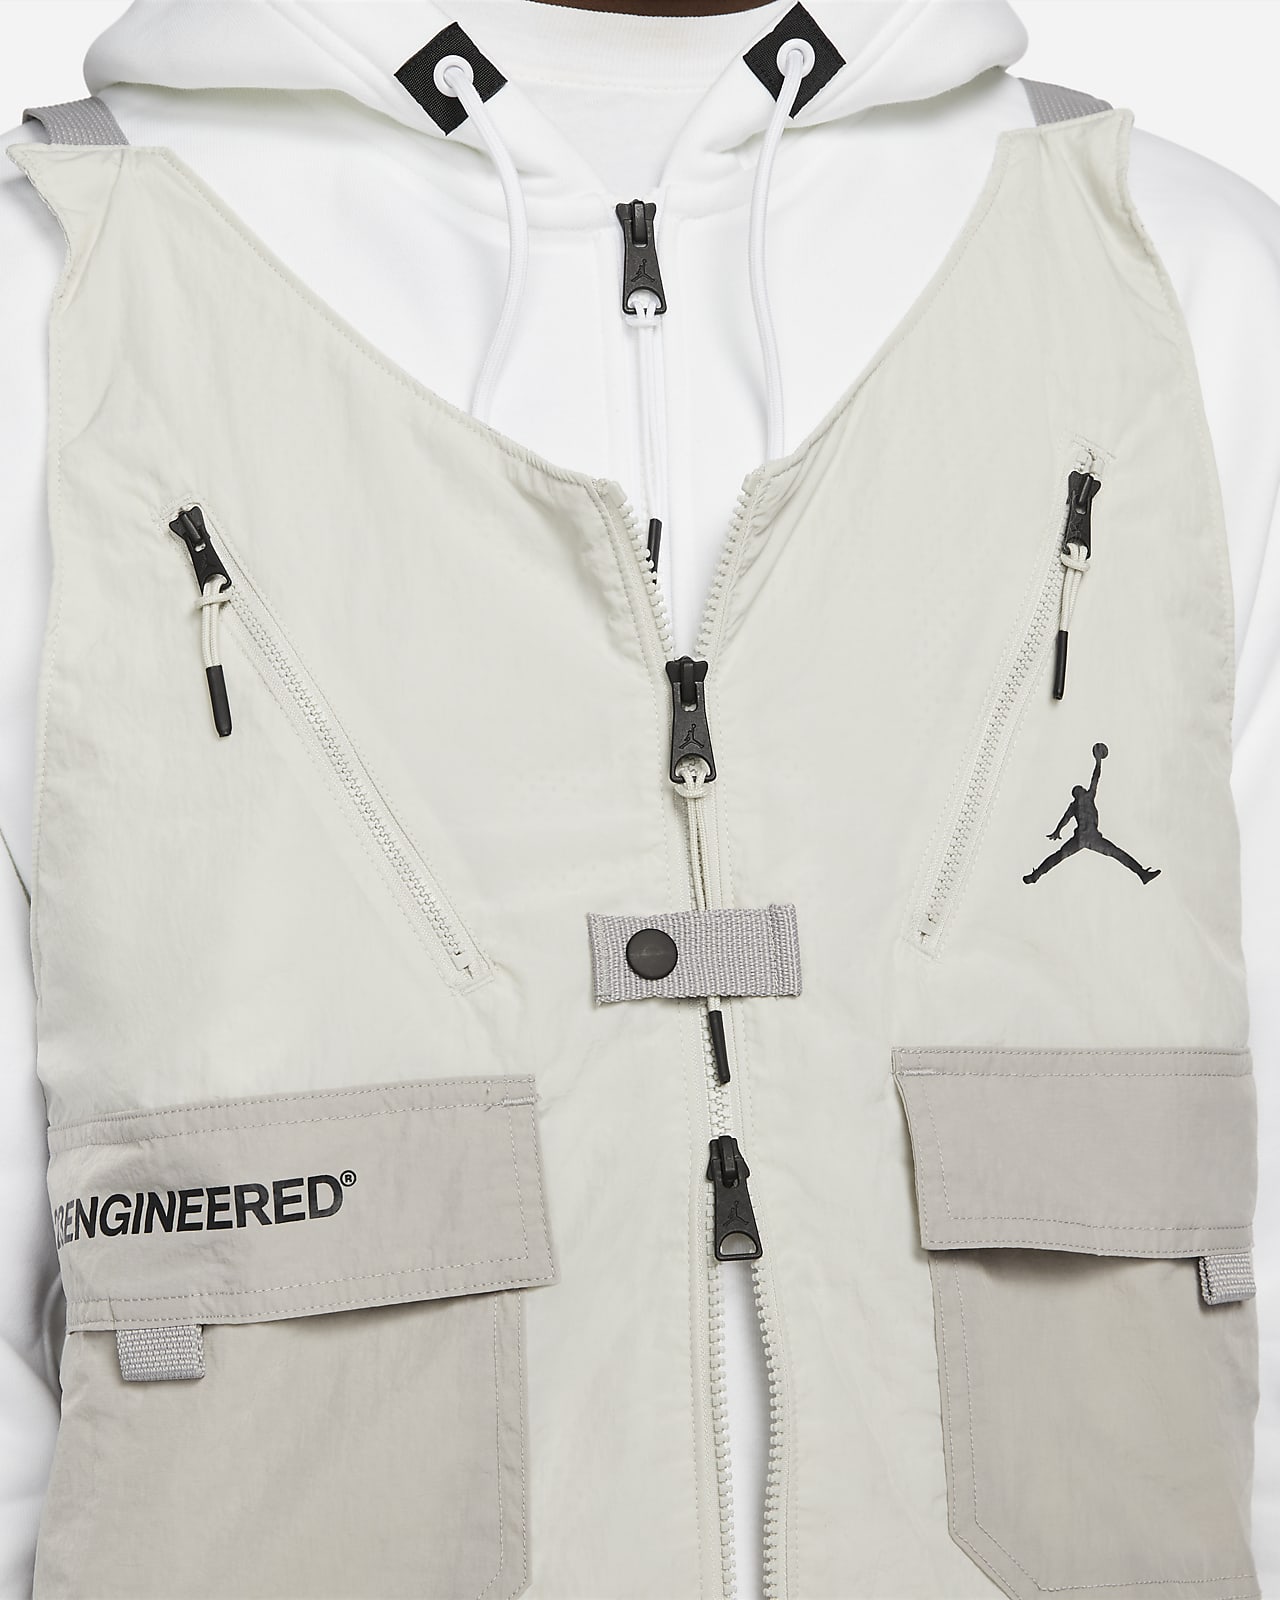 Jordan 23 Engineered Men's Full-Zip Fleece Hoodie. Nike LU